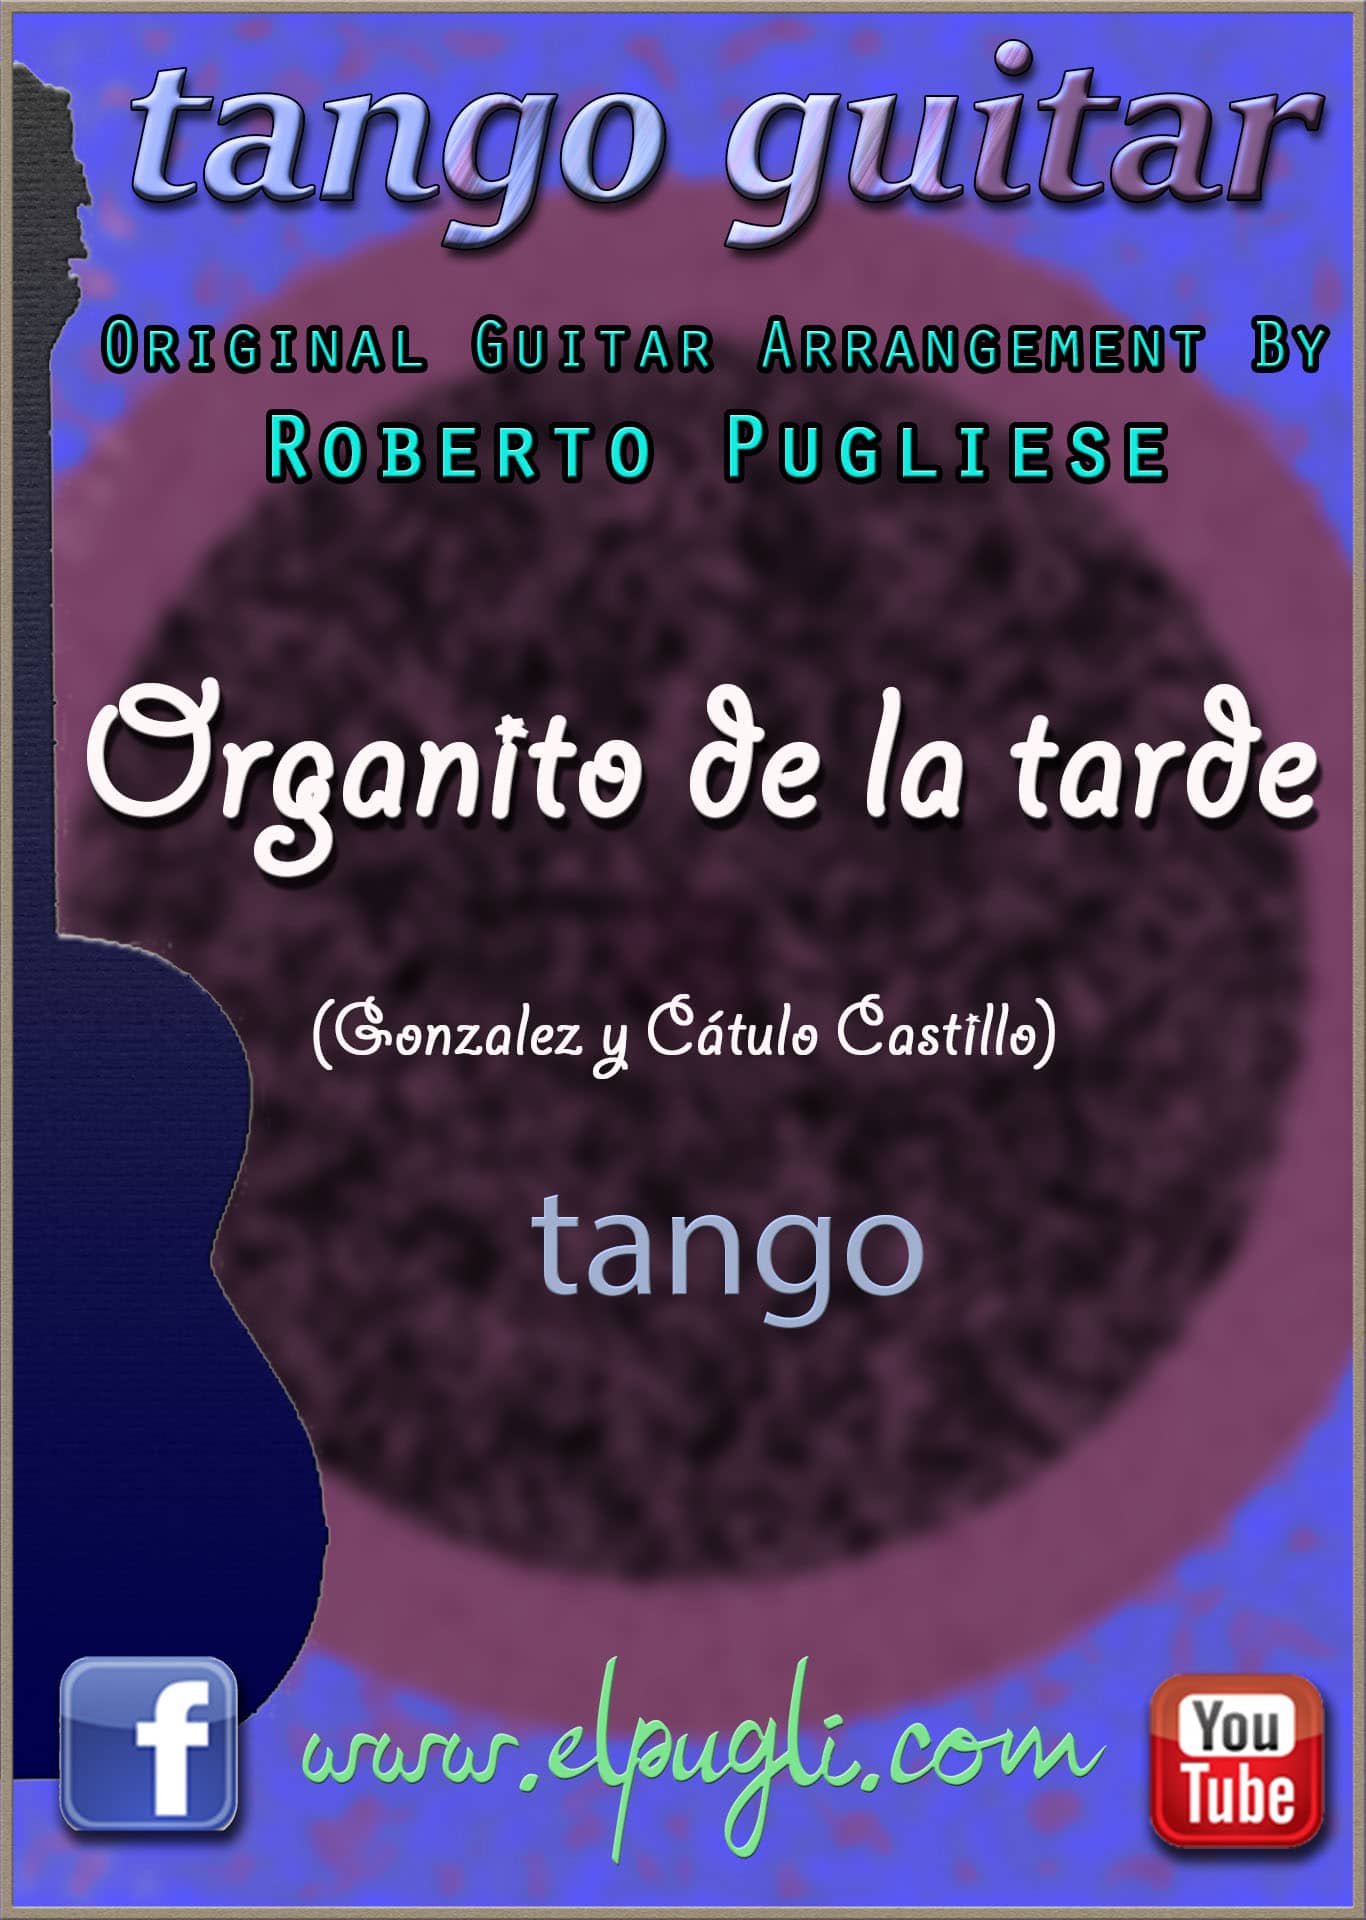 Organito de la tarde 🎵 mp3 tango en guitarra